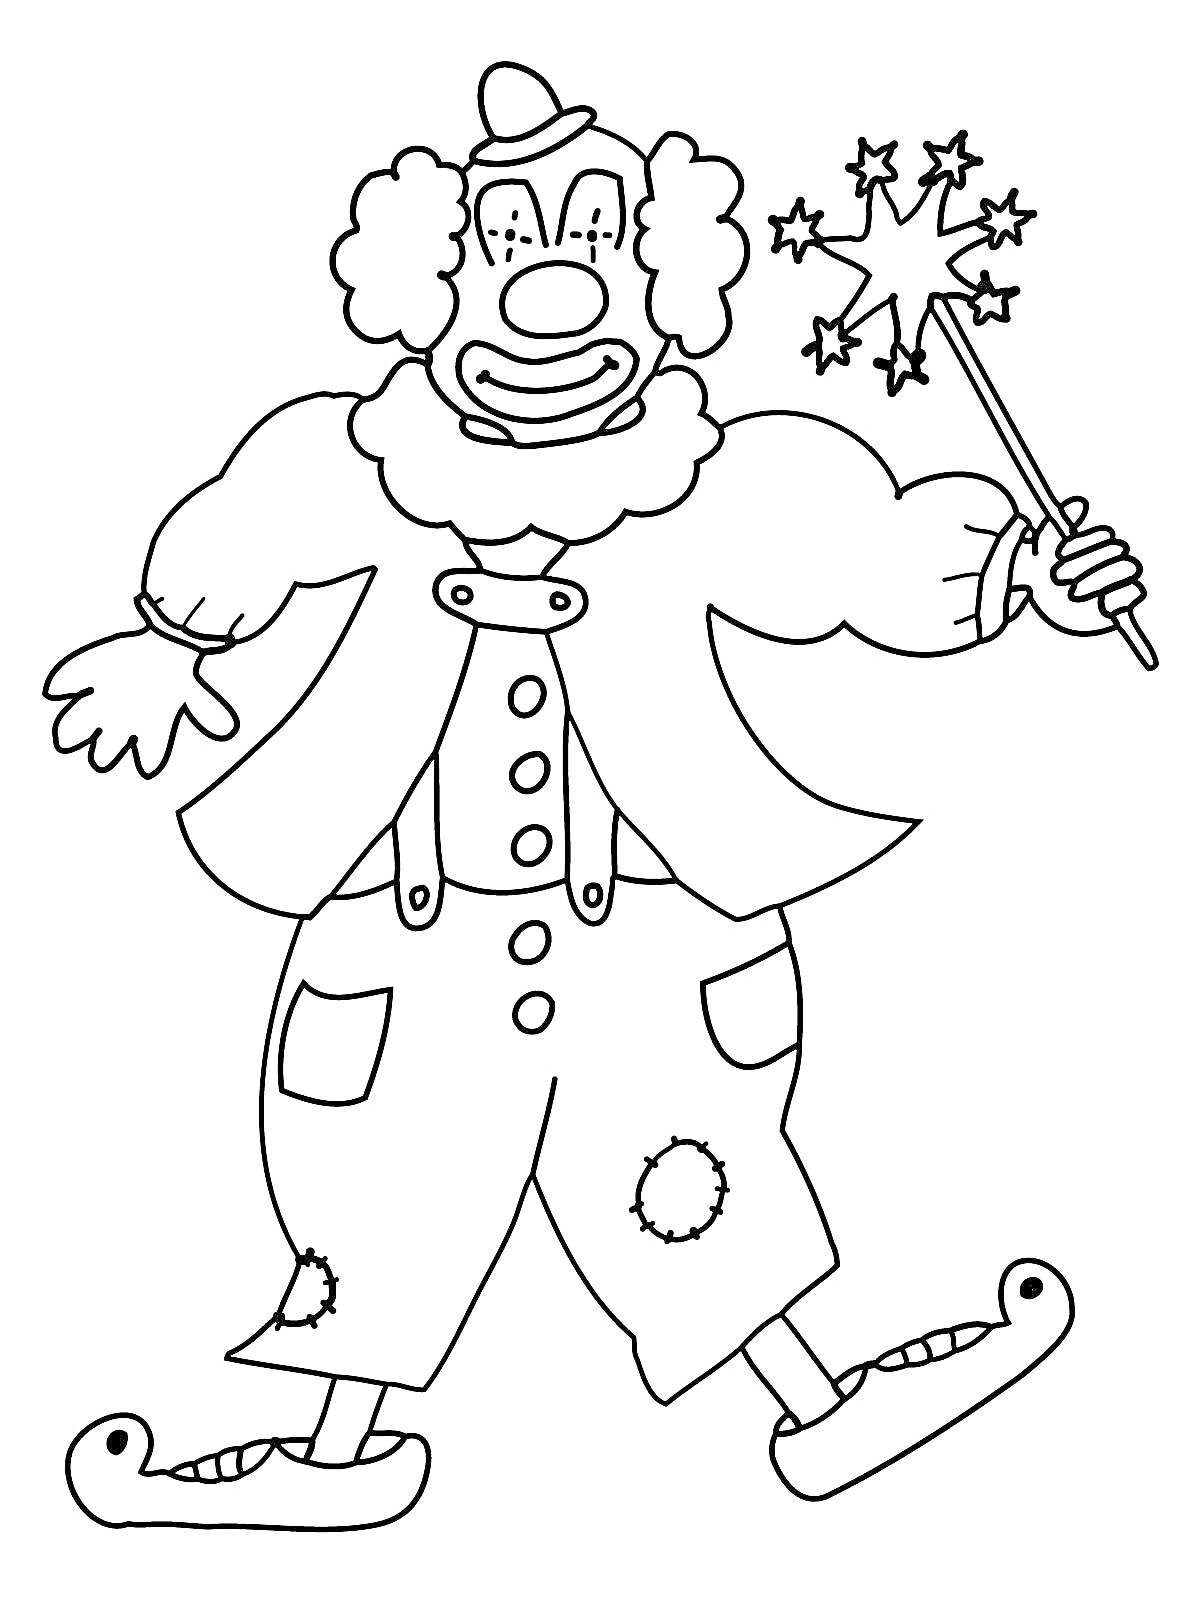 Раскраска Клоун с волшебной палочкой, в пиджаке и брюках с заплатками, в ботинках с носками, с пуговицами на животе, в шапочке и парике с кучерявыми волосами